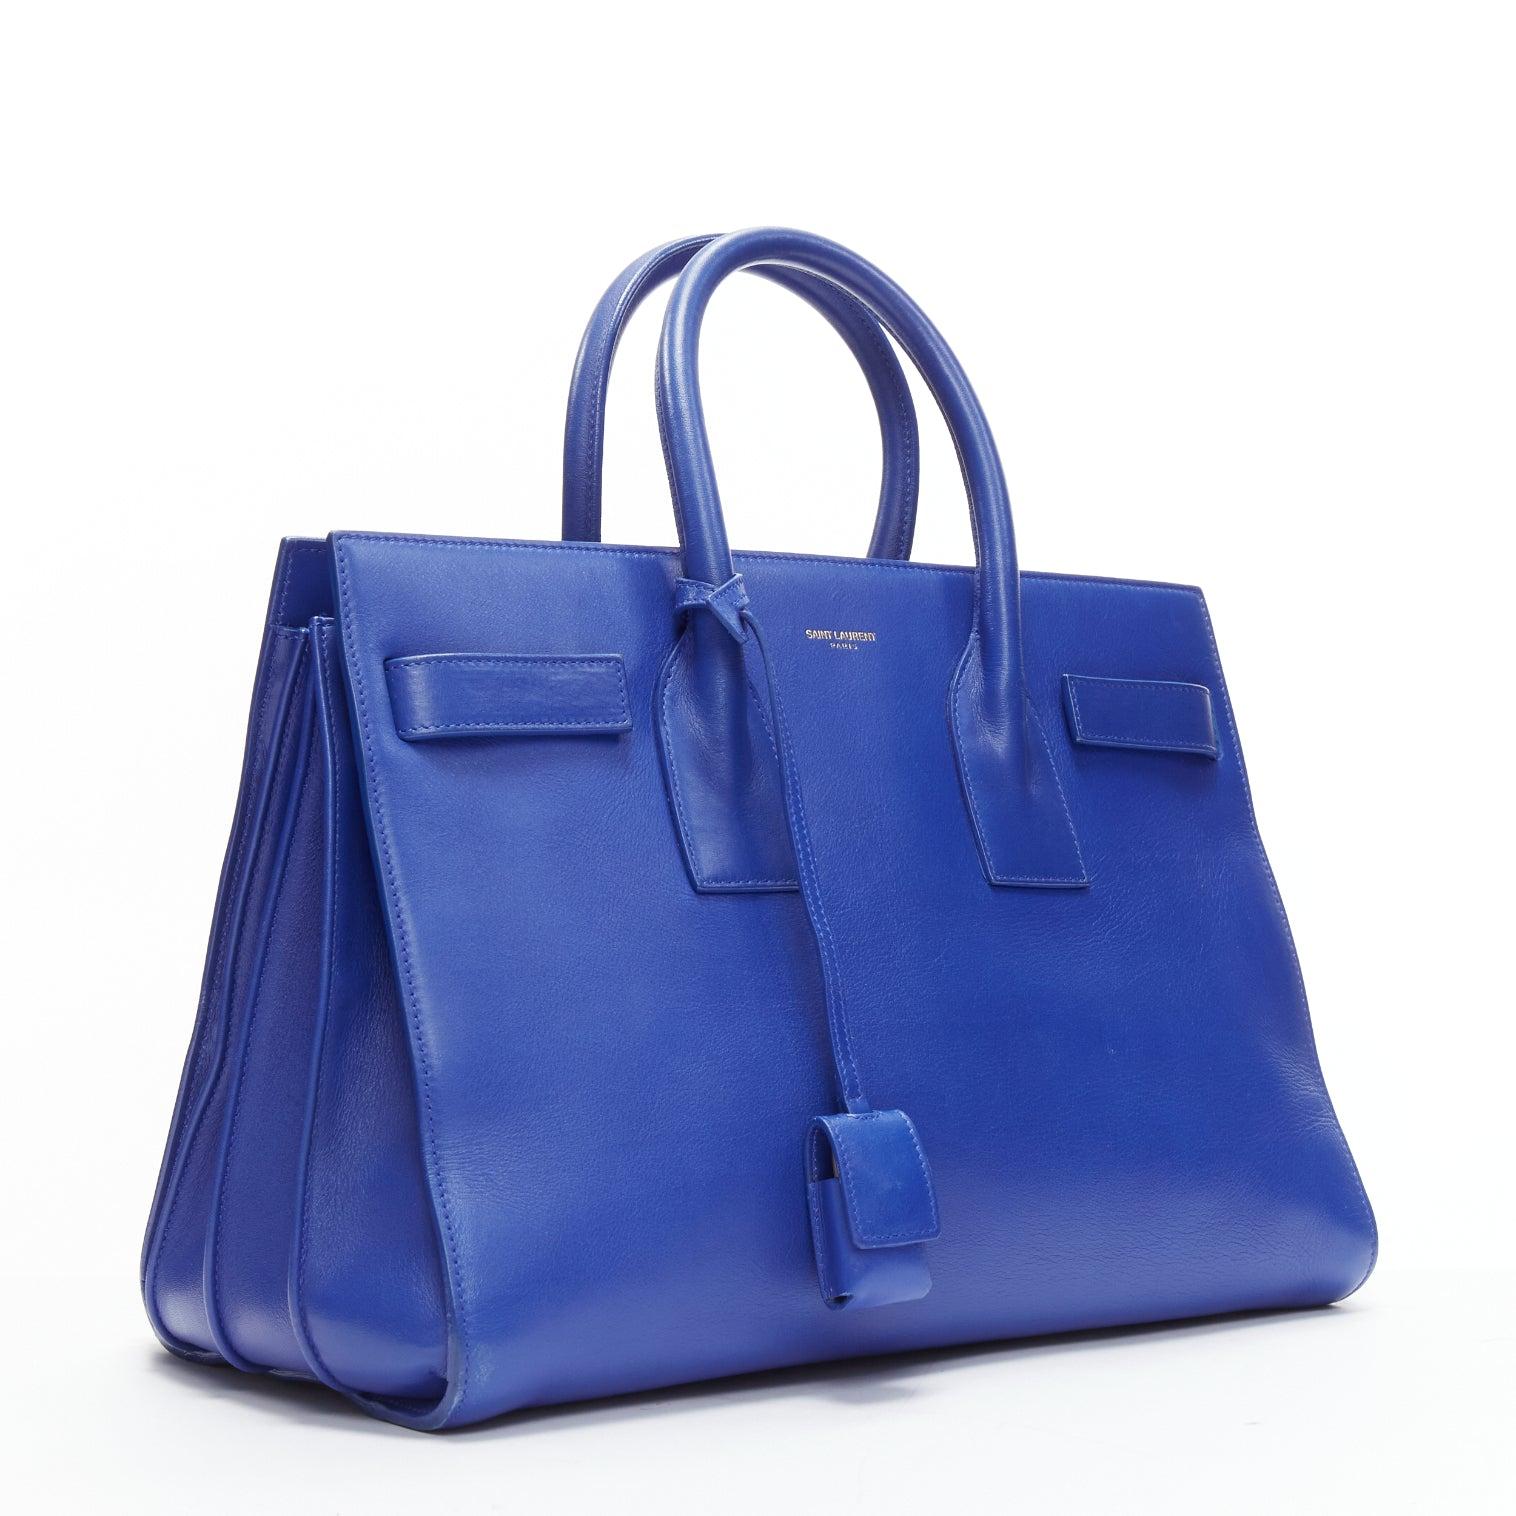 Women's SAINT LAURENT Sac Du Jour Royal Blue executive satchel tote bag